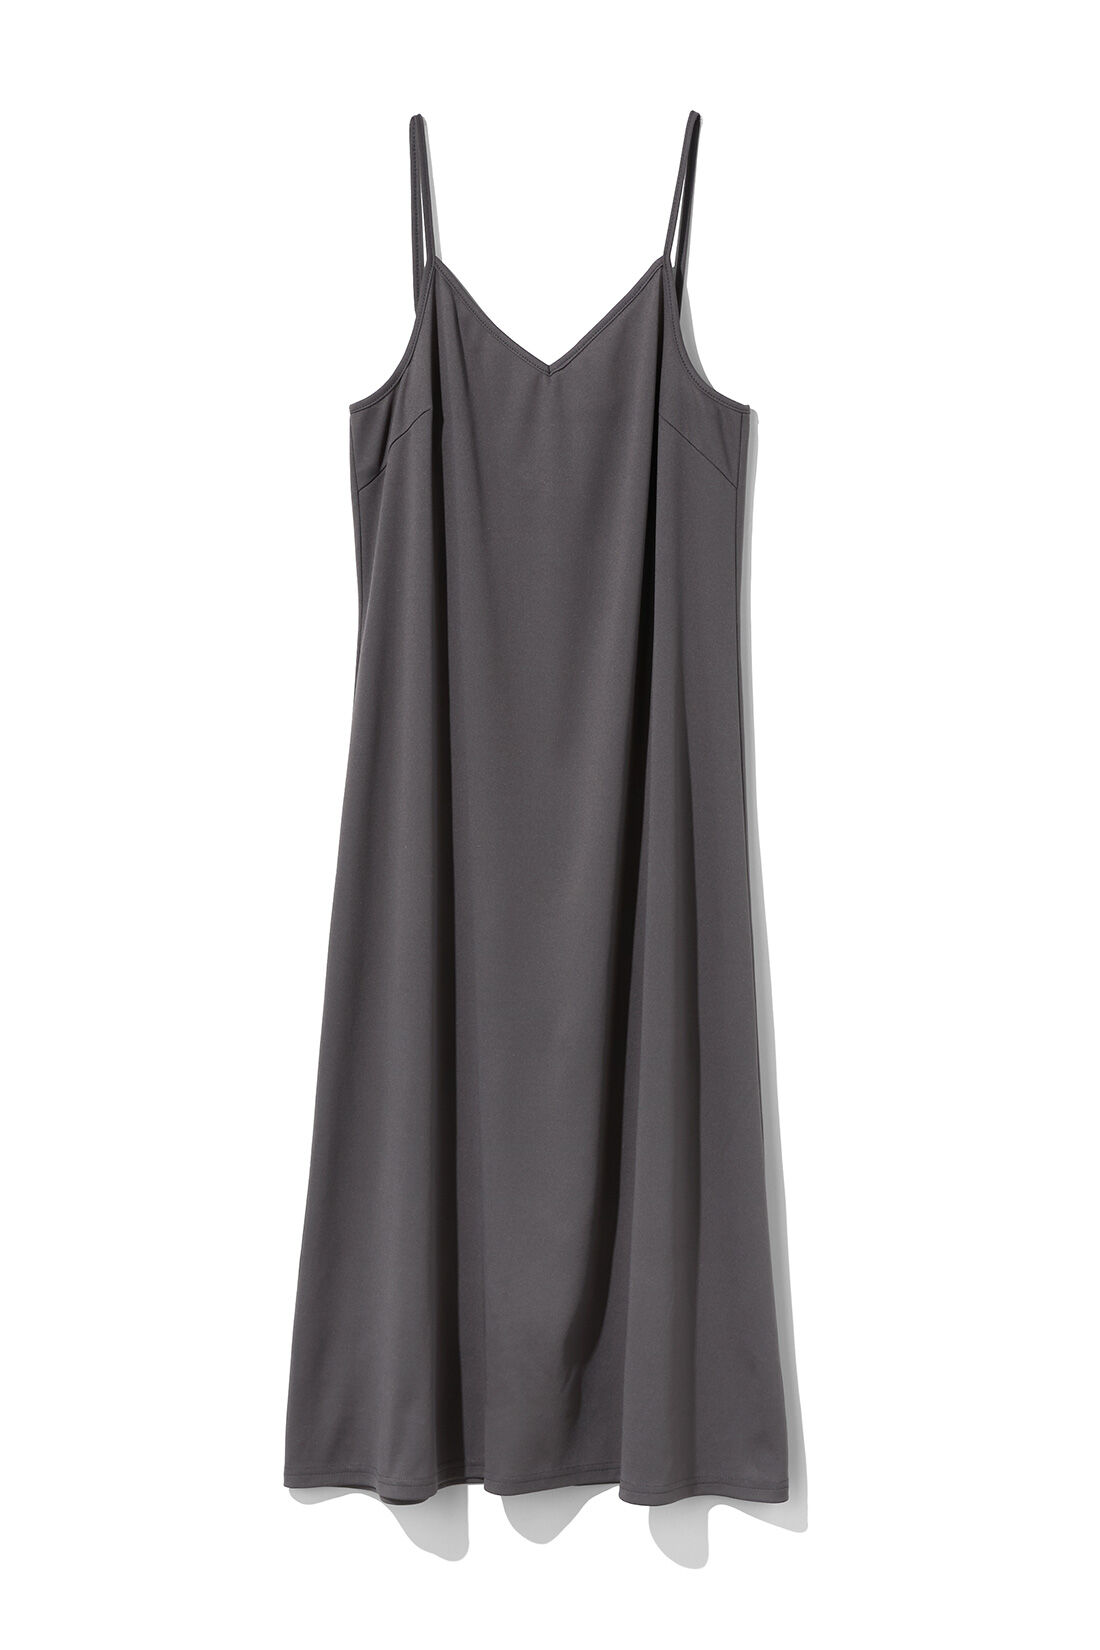 IEDIT[イディット]　大人にちょうどよい甘さのコットンボーラーレースのロングワンピース〈スミクロ〉|インナーを気にせずきれいに着られるように同色のキャミドレスをセット。